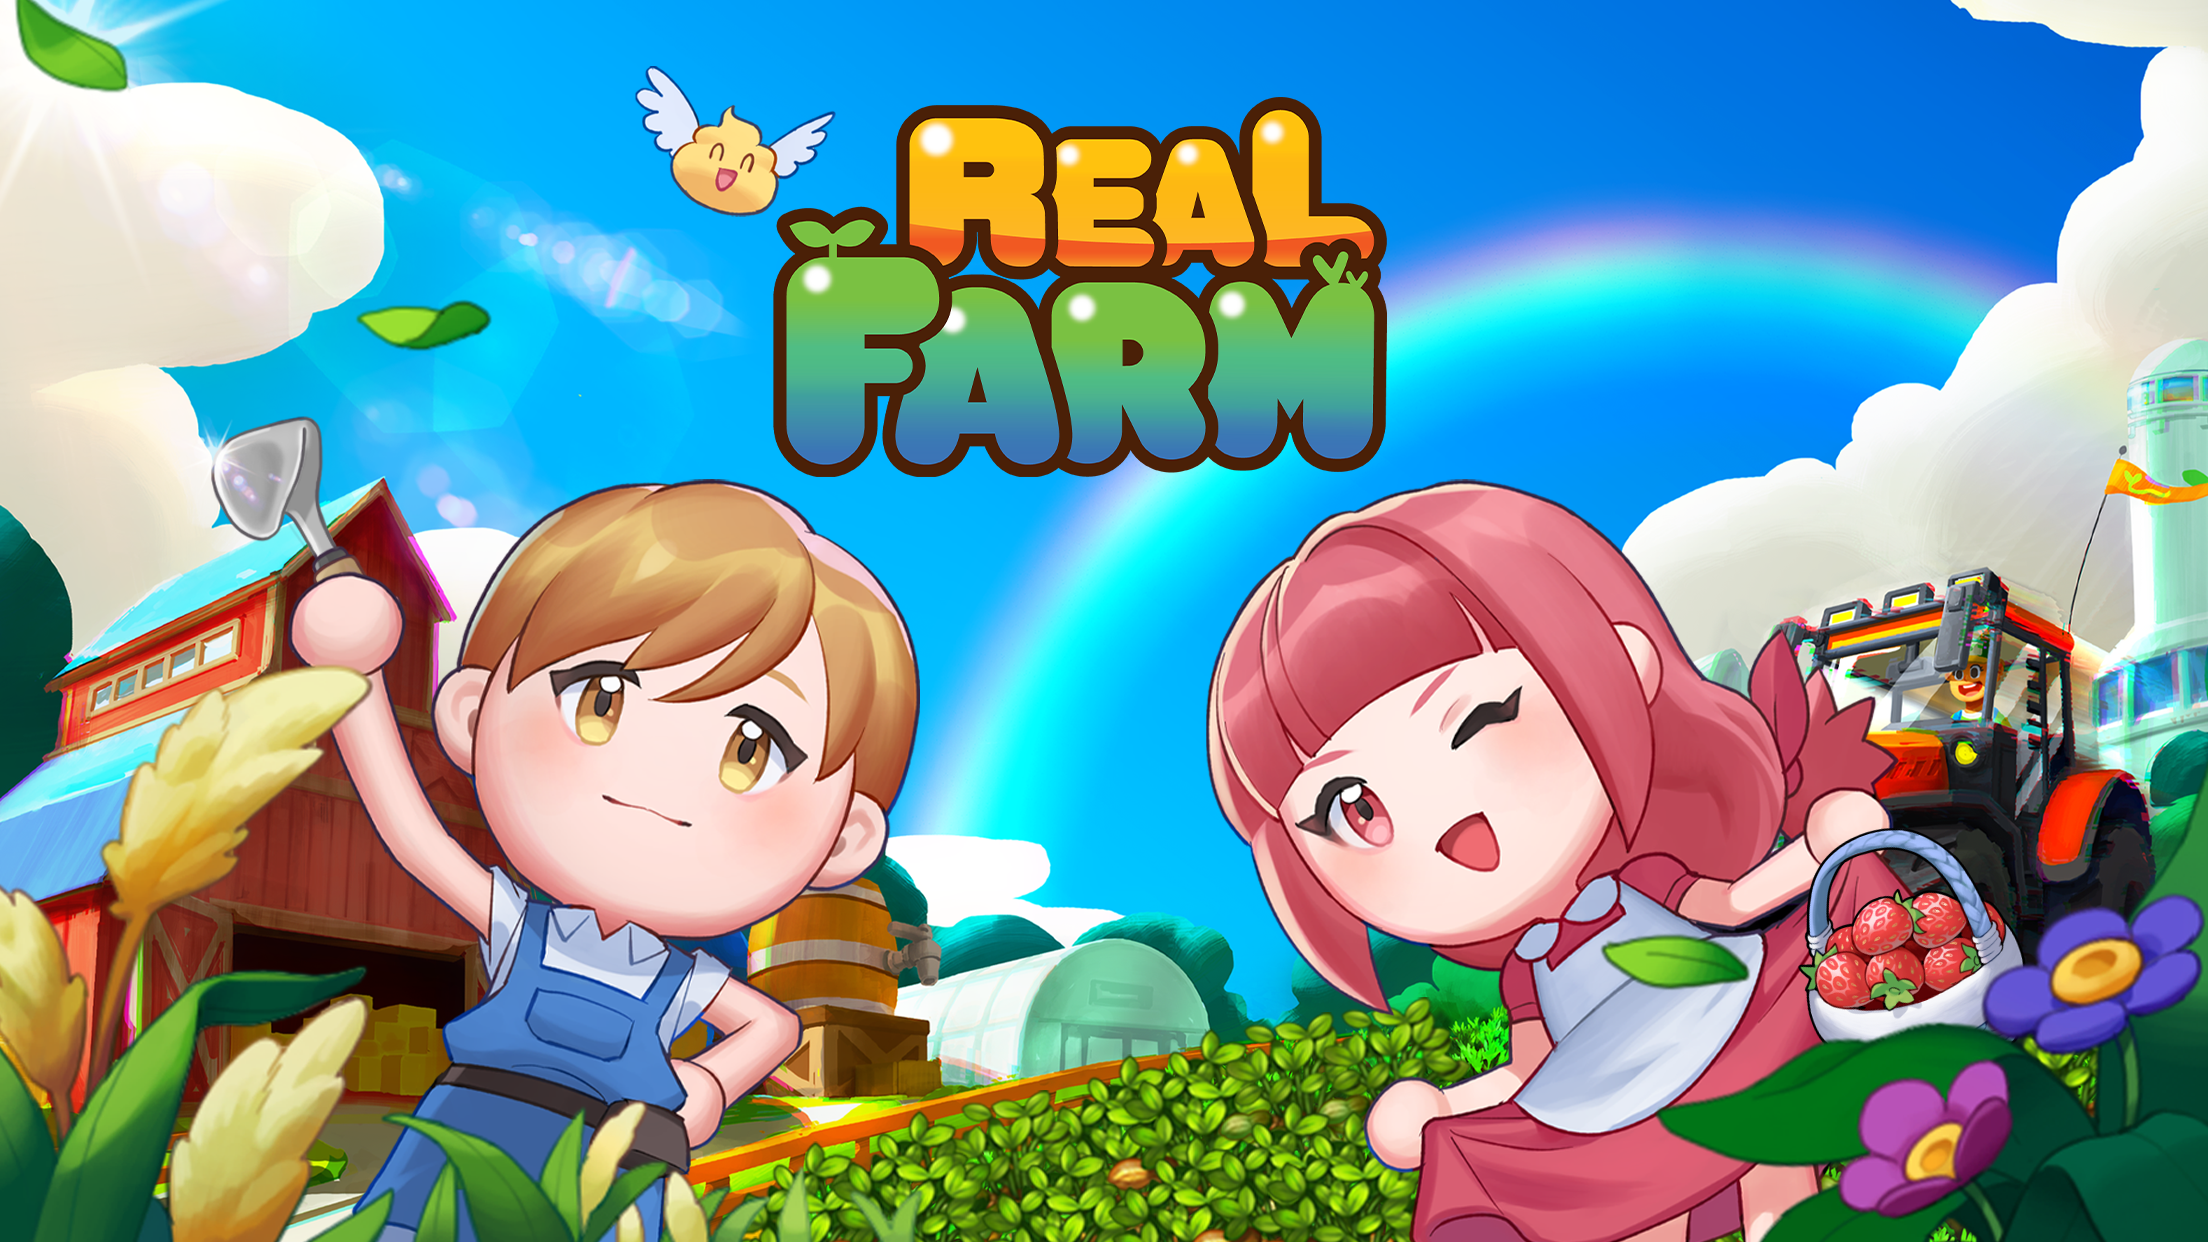 Screenshot 1 of Real Farm : Un jeu où vous rencontrez un vrai fermier 